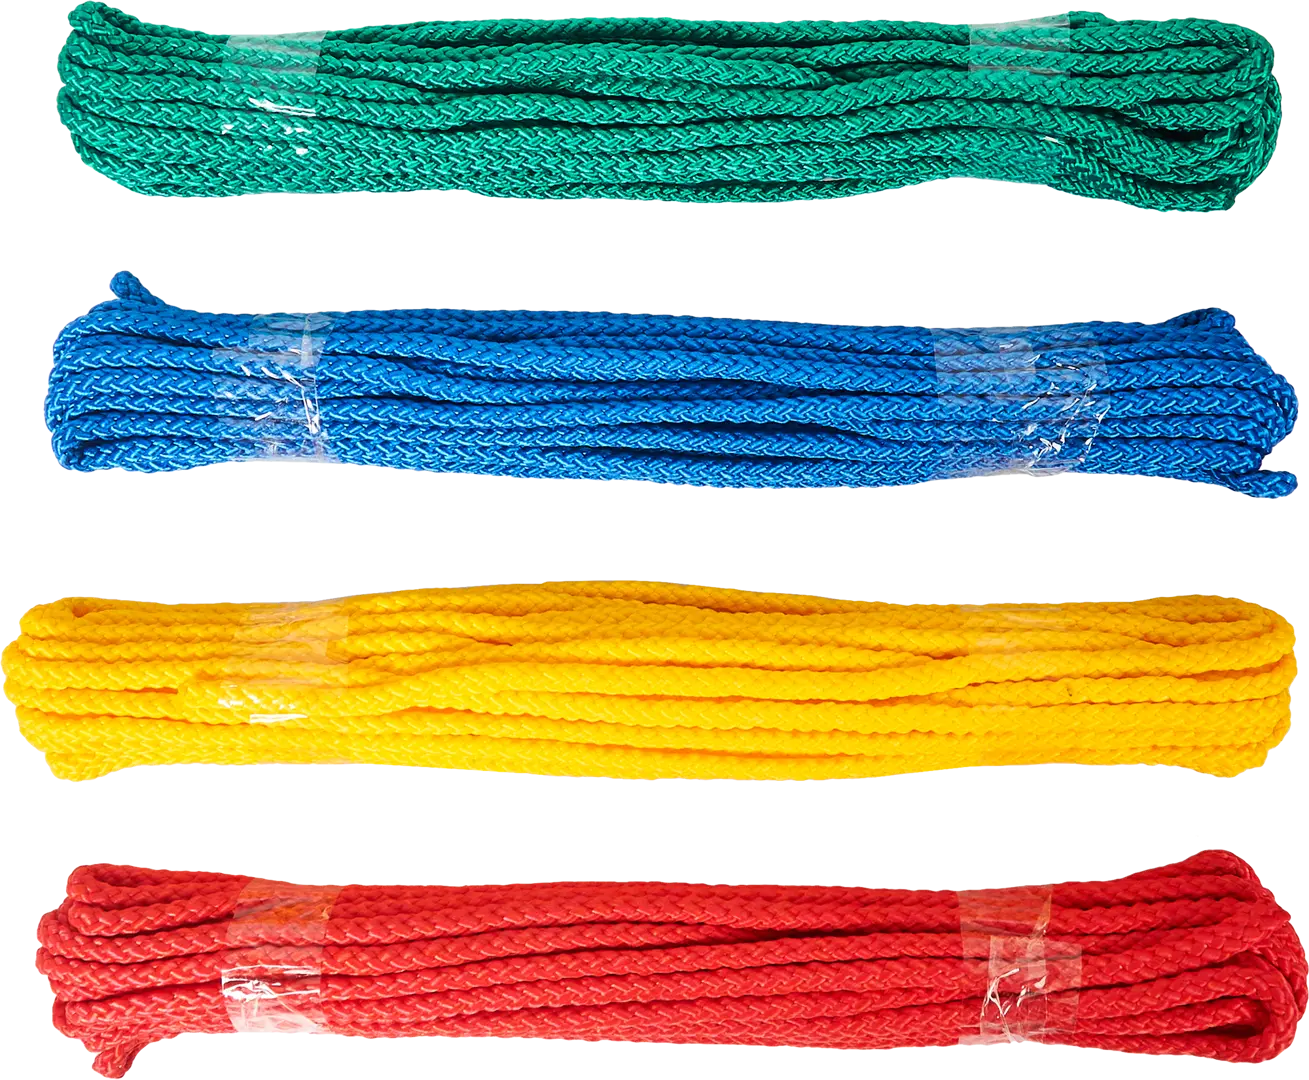 Веревка без сердечника полипропиленовая 6 мм цвет разноцветный, 10 м/уп. водорозетка двойная полипропиленовая gibax